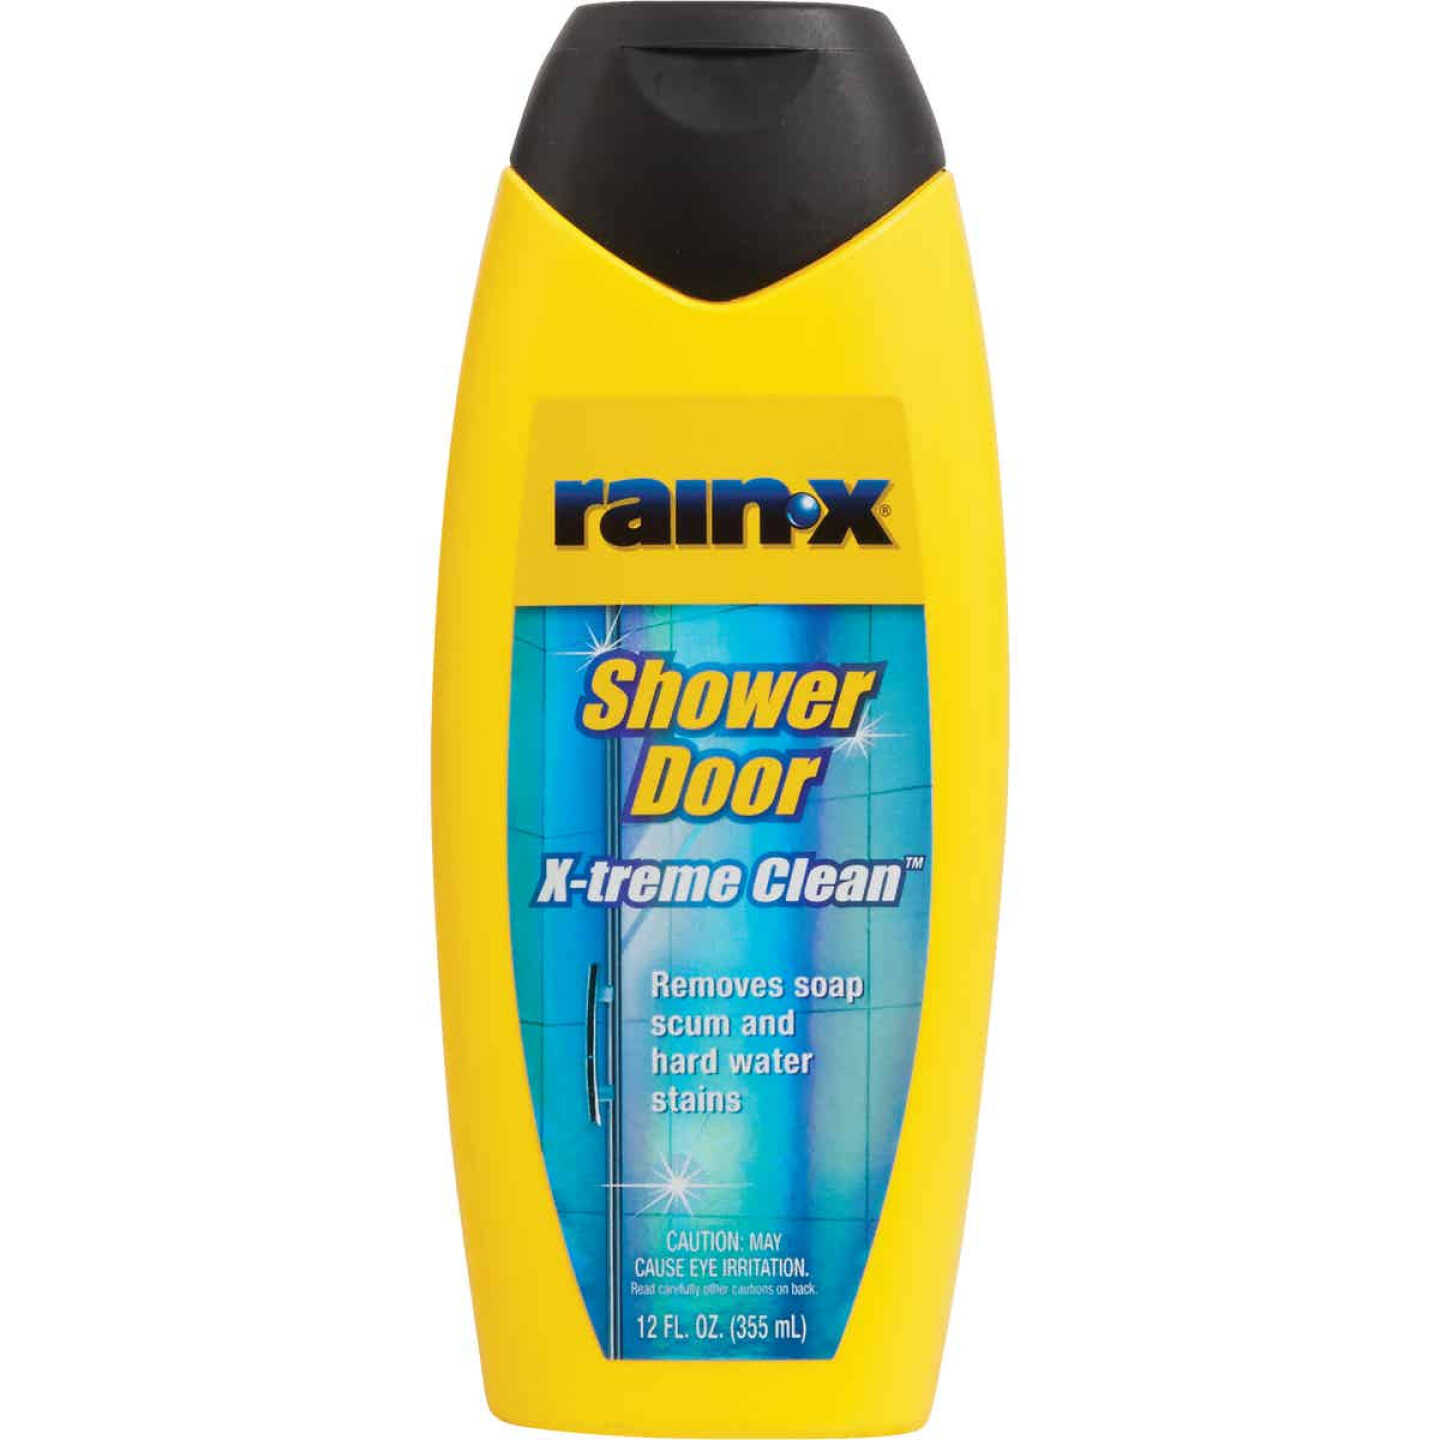 X-Treme Clean Shower Door Cleaner, 12 Fl. Oz